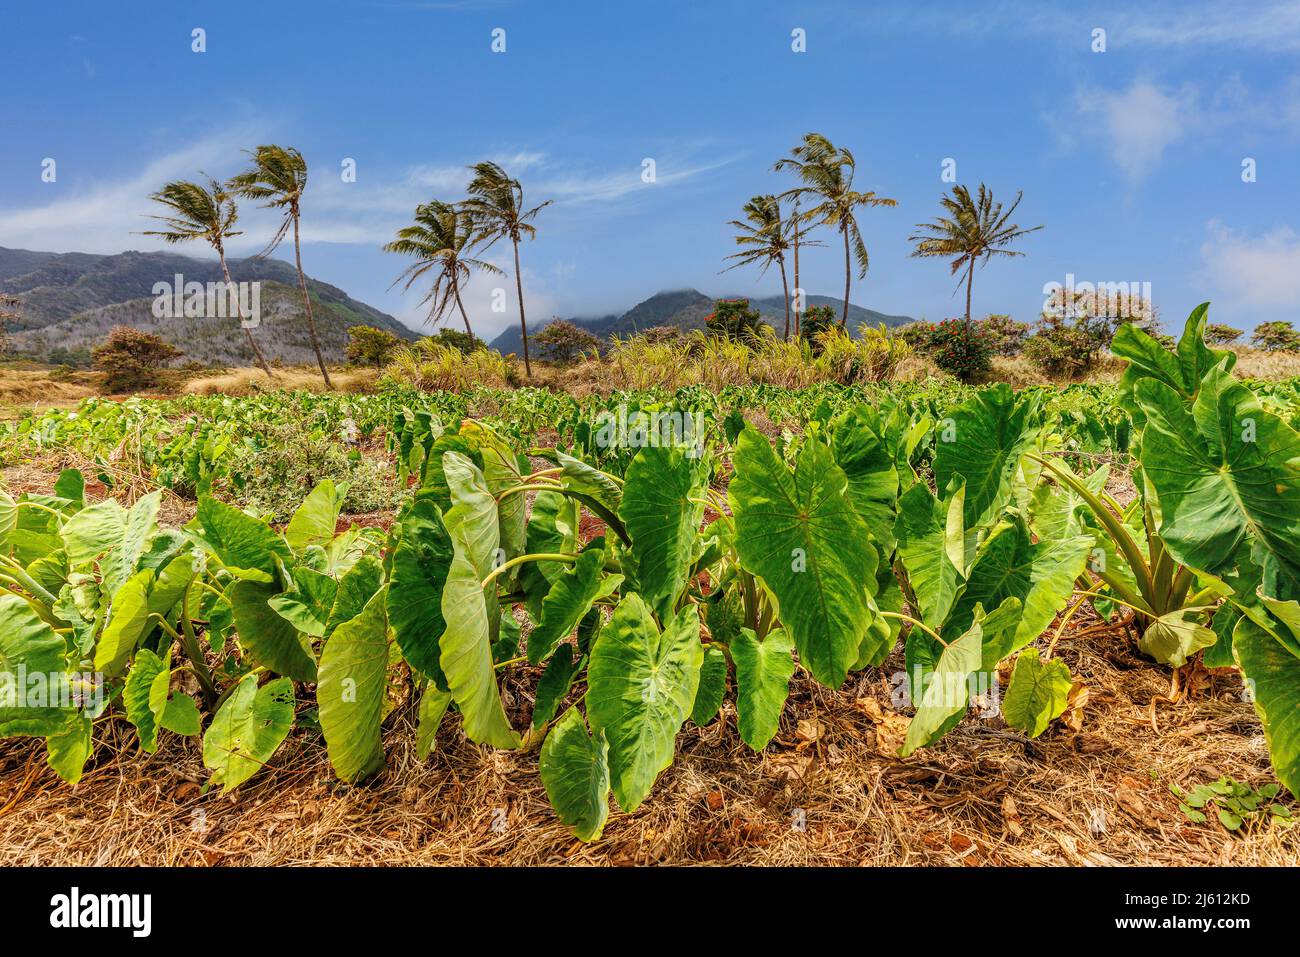 Le taro de terre sèche, Colocasia esculenta, connu sous le nom de Kalo en hawaïen, est une culture importante et la plante d'état d'Hawaï. Il s'agit d'une culture de racine étoilée Banque D'Images